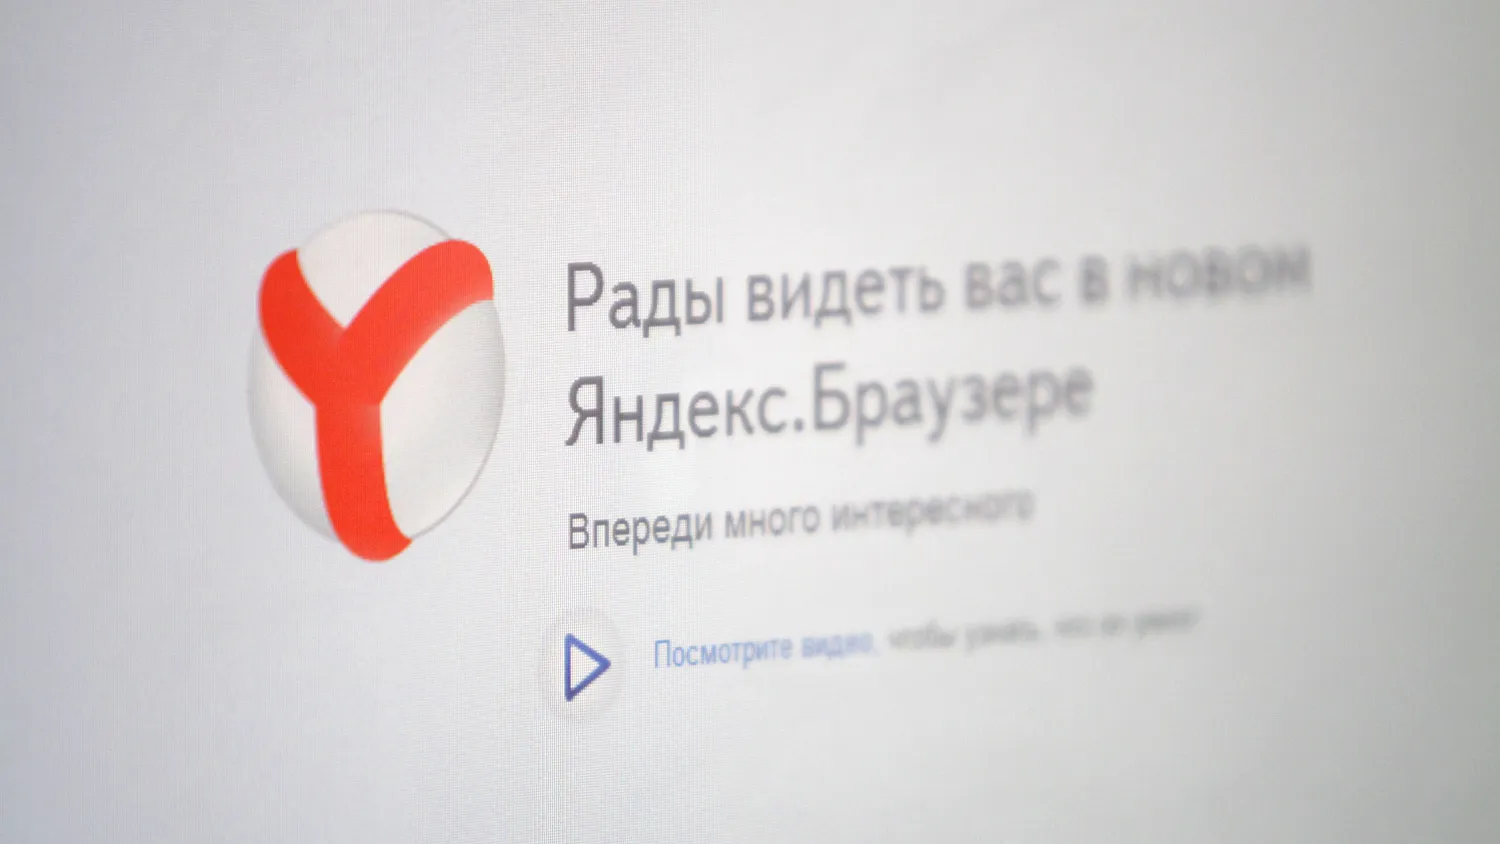 Вышла новая версия «Яндекс-браузера»